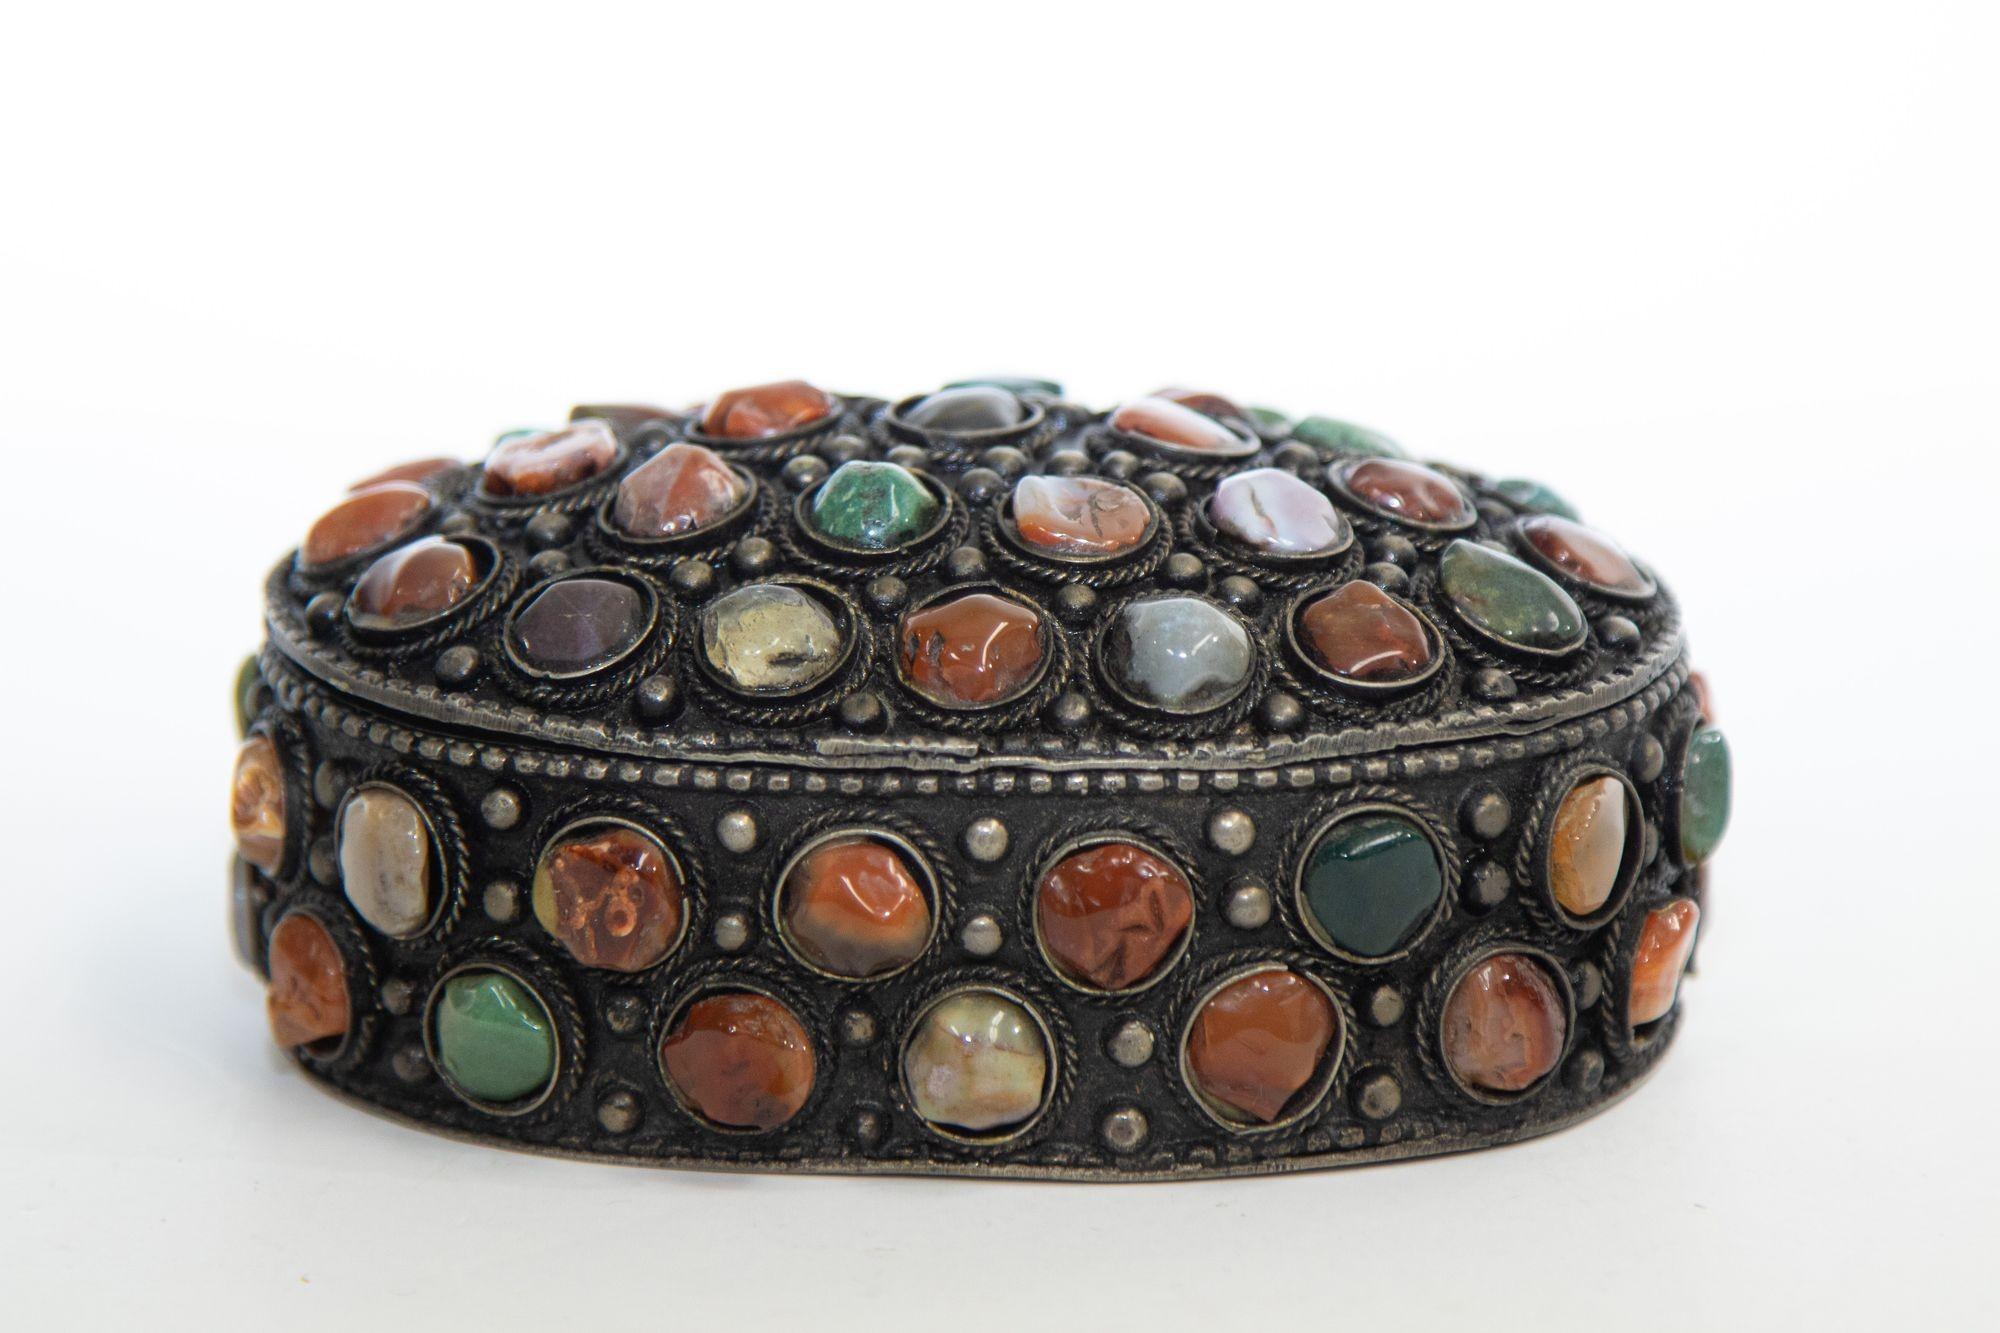 Boîte à bijoux vintage mauresque moghole Raj incrustée de pierres d'agate semi-précieuses et recouverte de filigrane en métal argenté.
Coffret à bijoux mauresque du Moyen-Orient, très impressionnant. 
Boîte à bijoux vintage recouverte de pierres